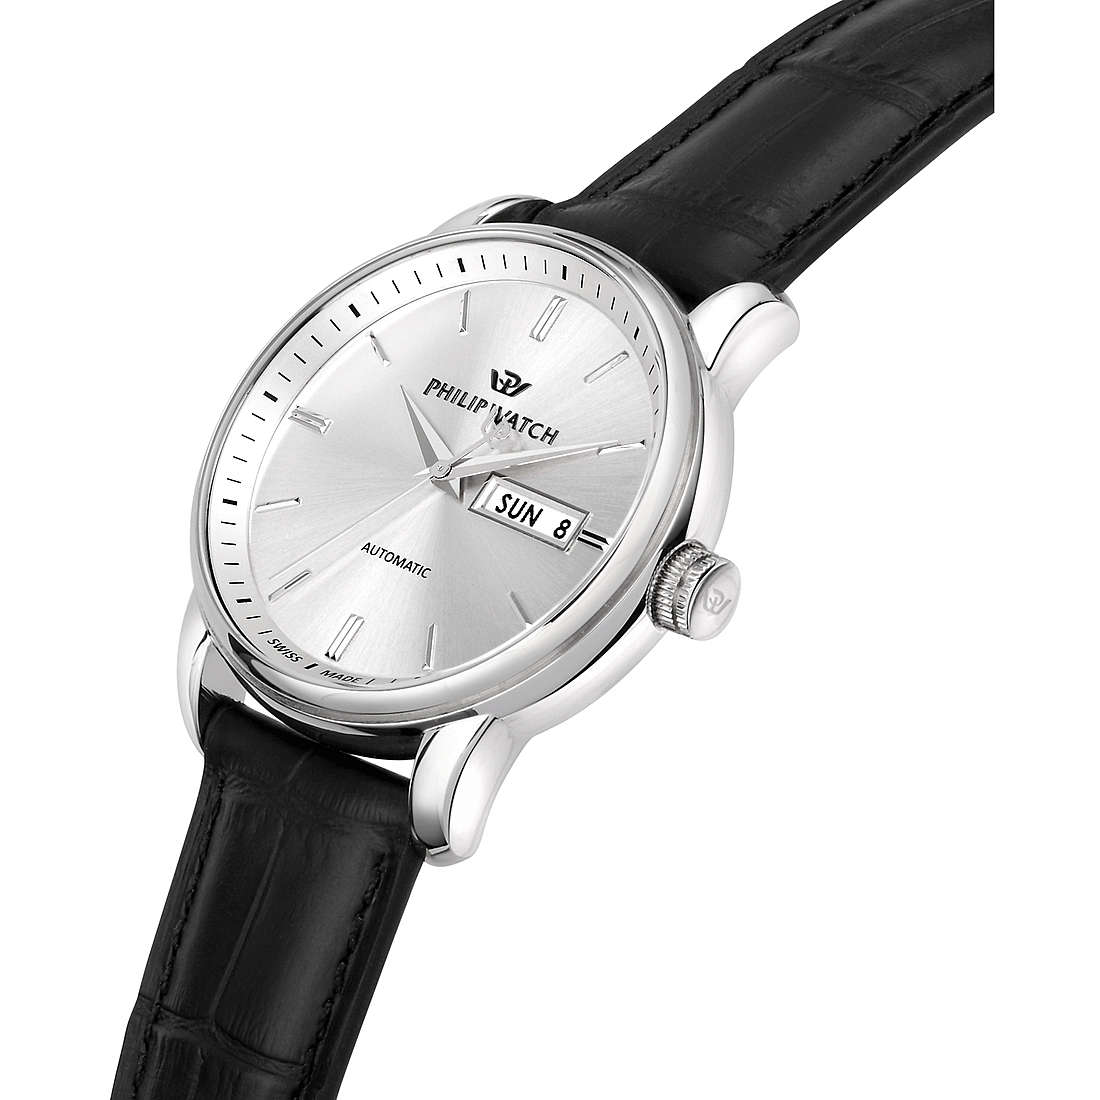 orologio meccanico uomo Philip Watch Anniversary - R8221150006 R8221150006